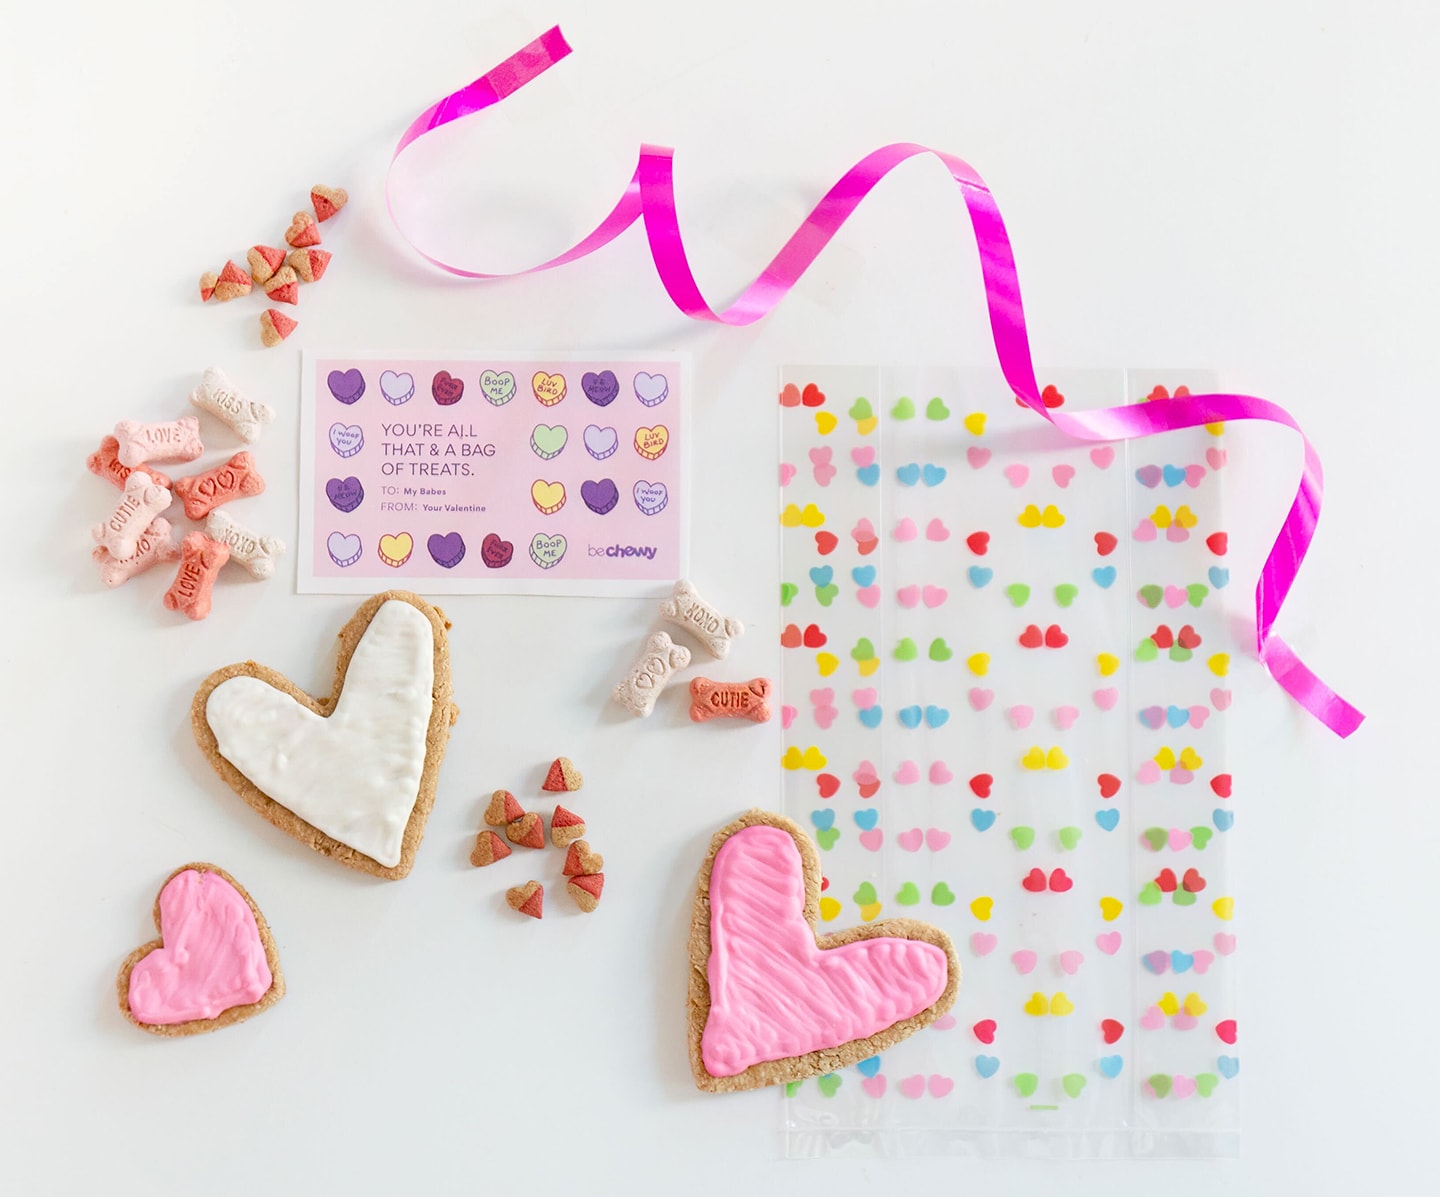 Valentine's Day cookie gram supplies BeChewy